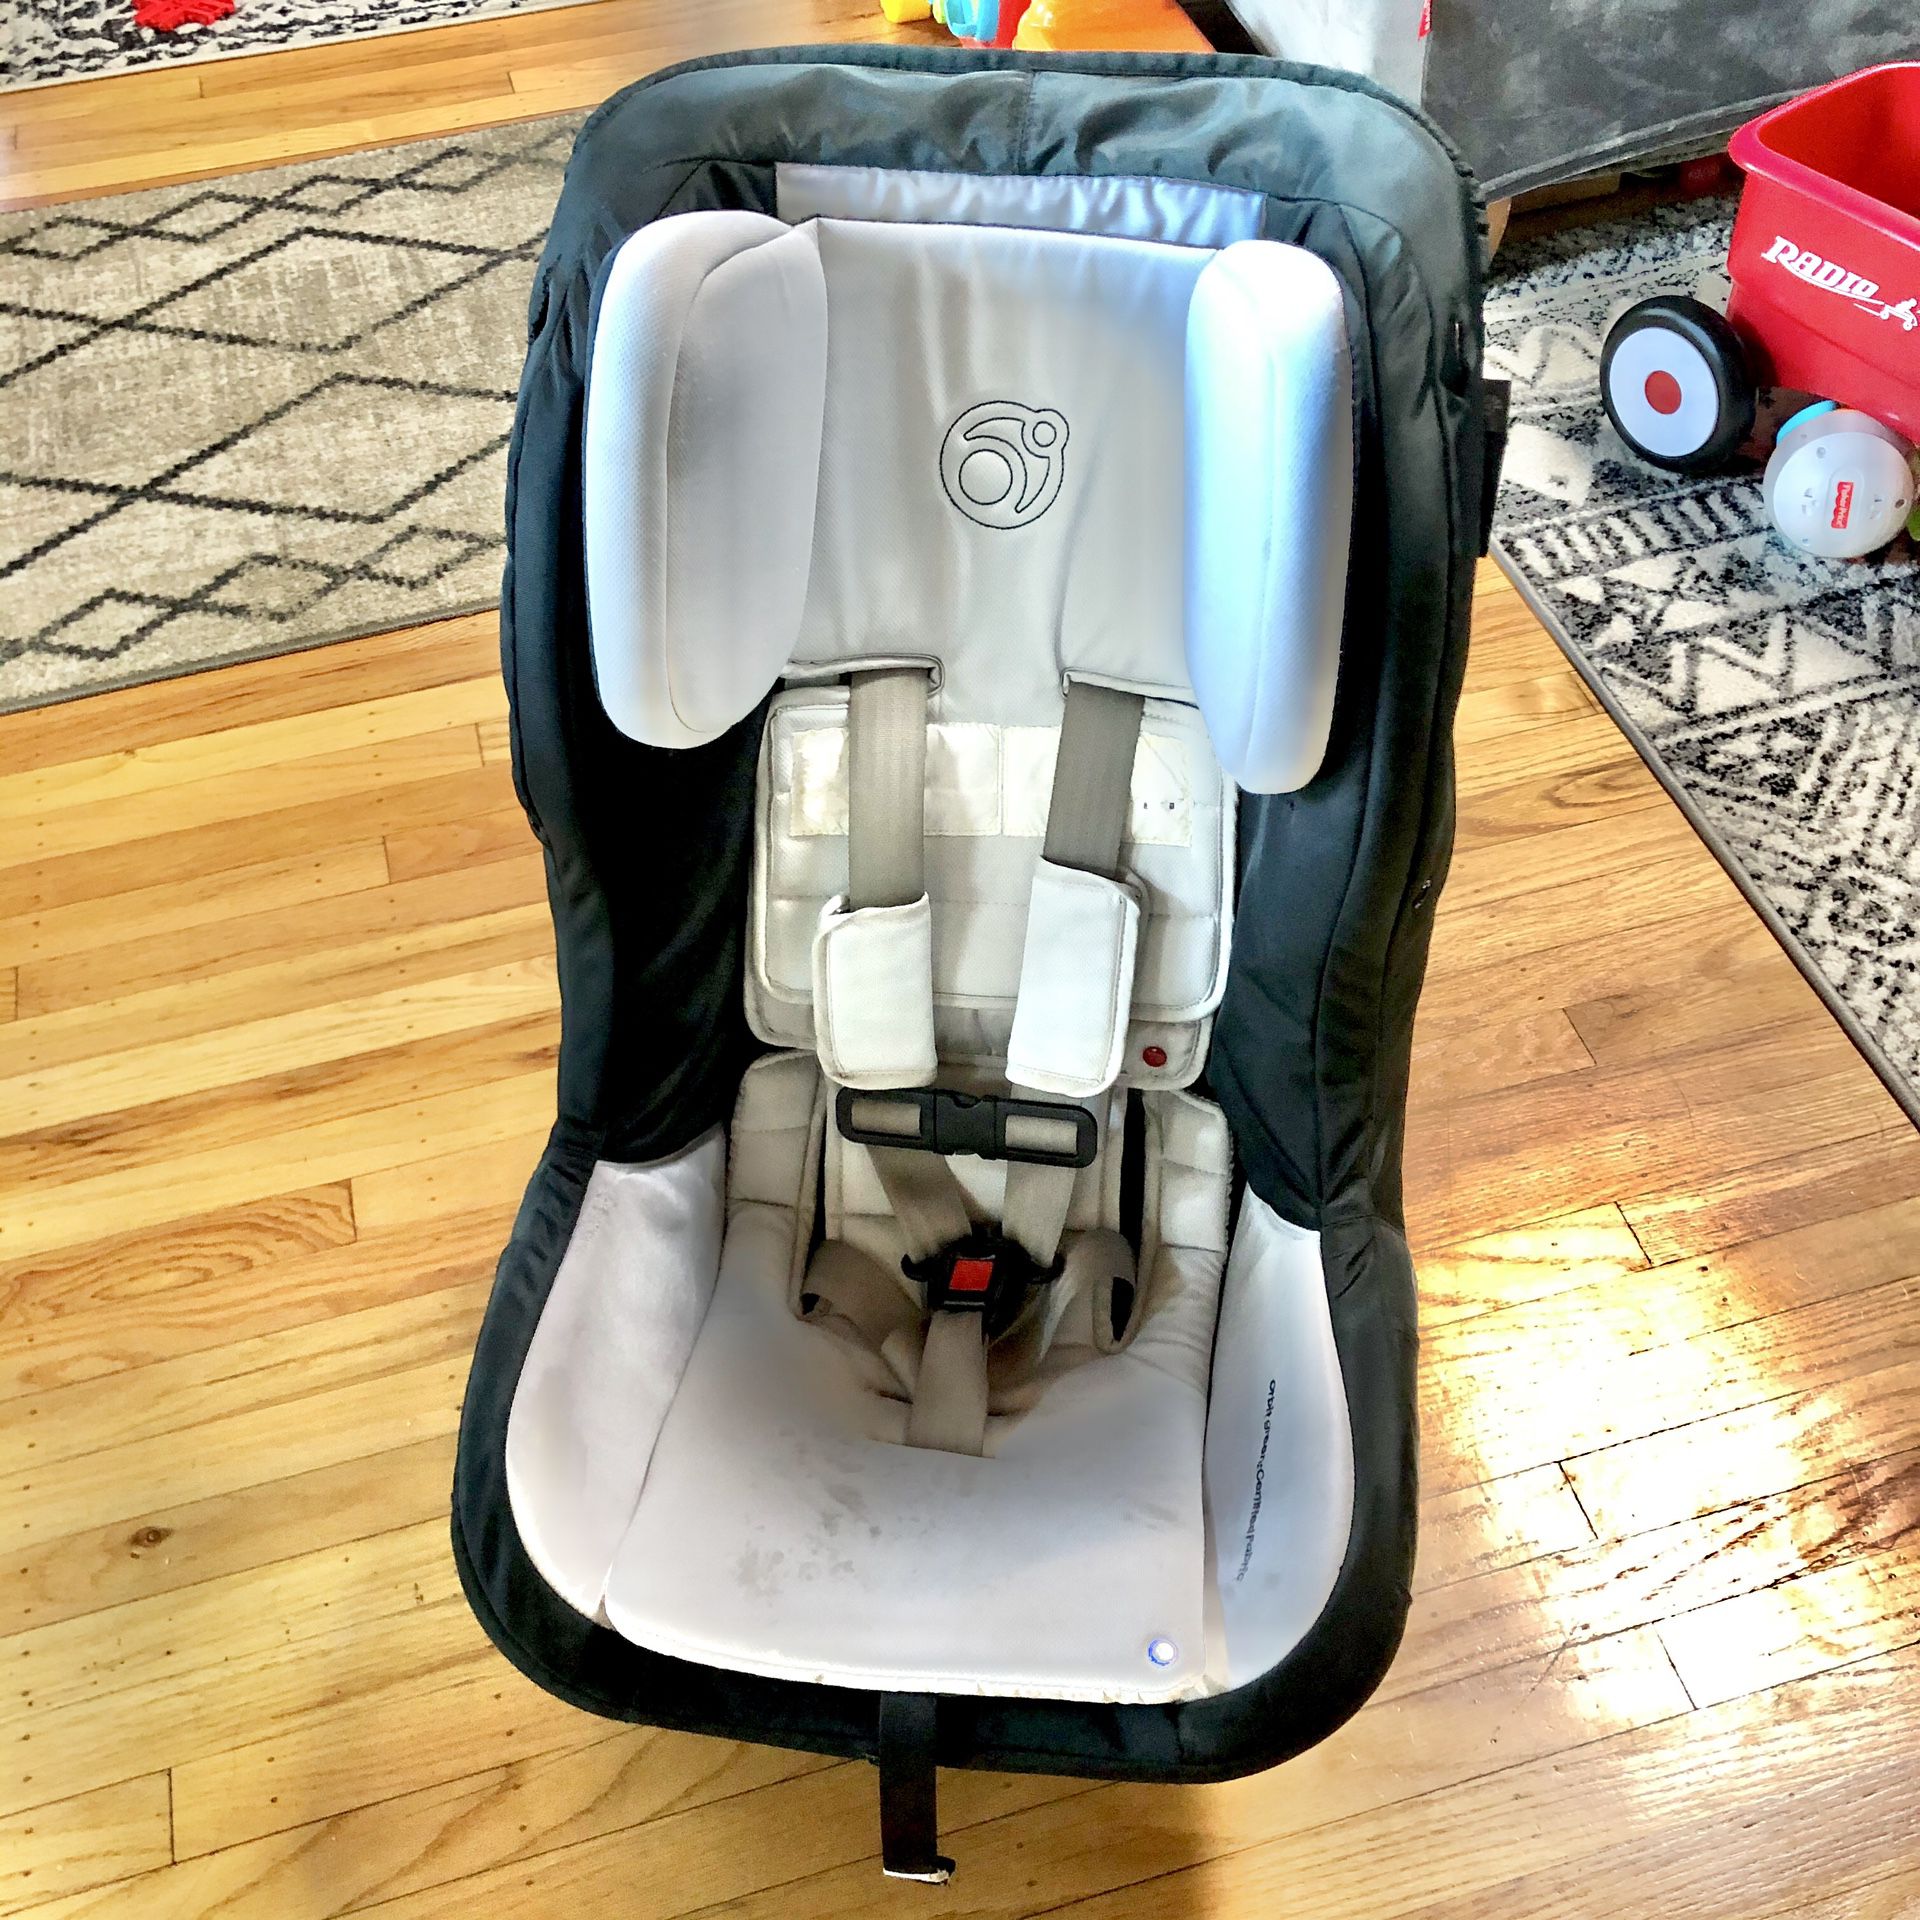 Orbit Baby G3 Toddler Car Seat